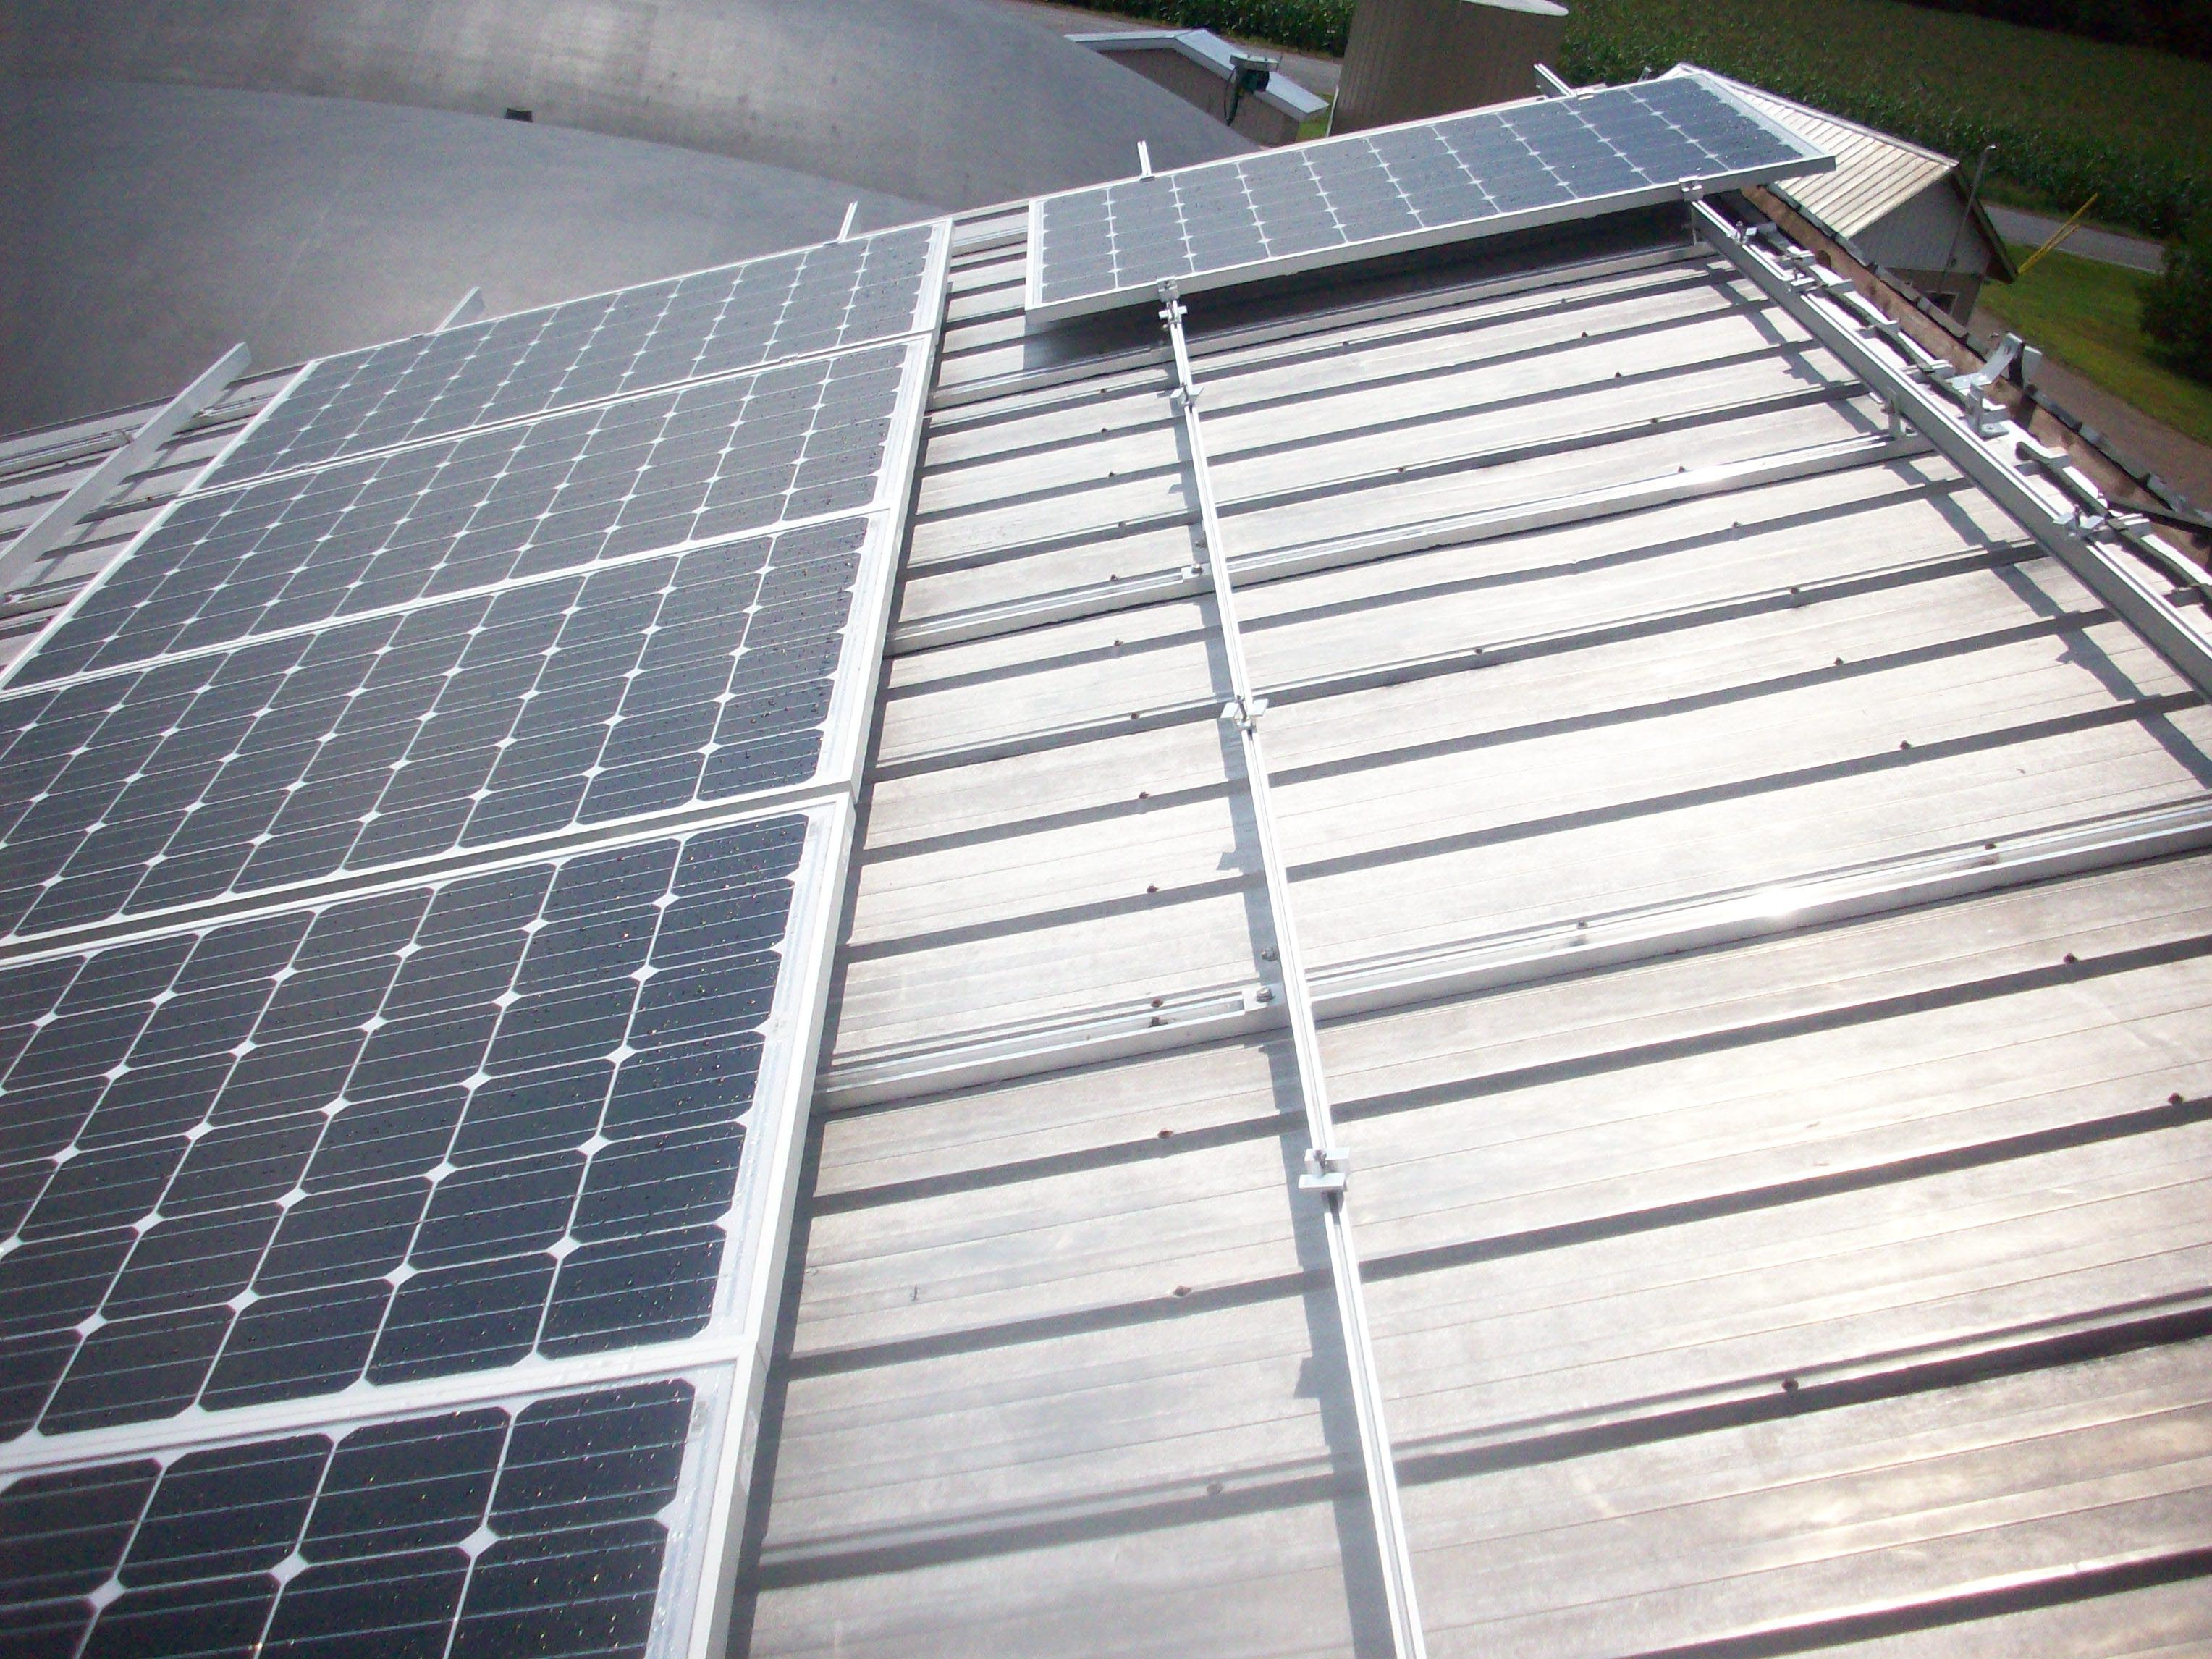 Photo d’une installation de panneaux solaires, avec des rangées réservées à l’accès et à la ventilation. Les panneaux sont composés de modules de silicium cristallin